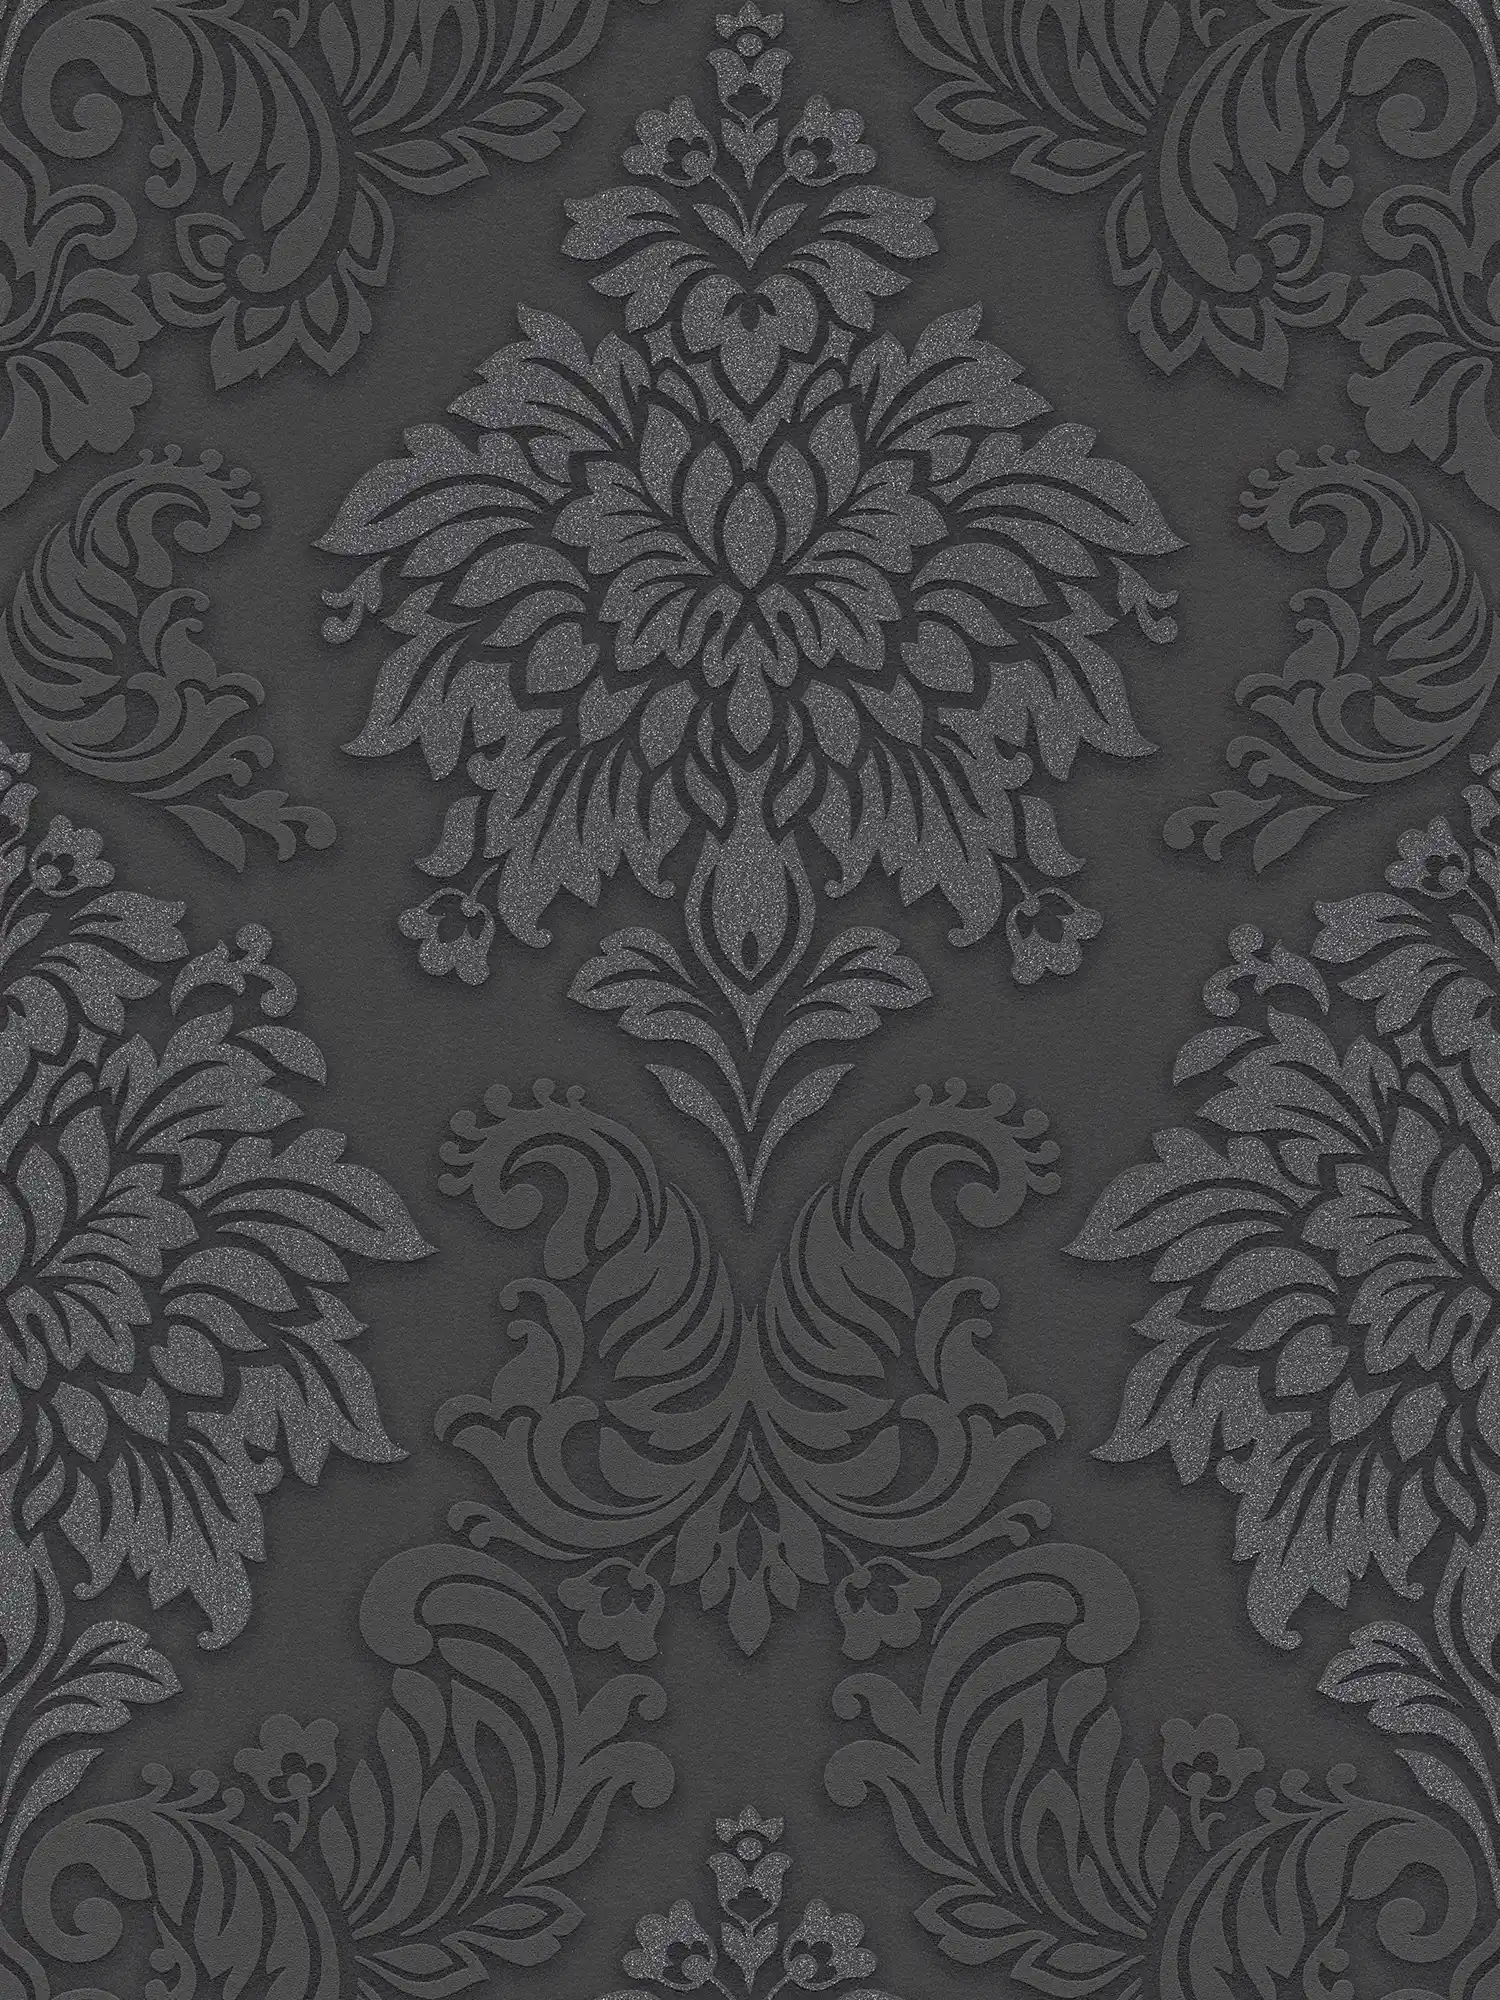 Barok behangornamenten met glittereffect - zwart, zilver, grijs
